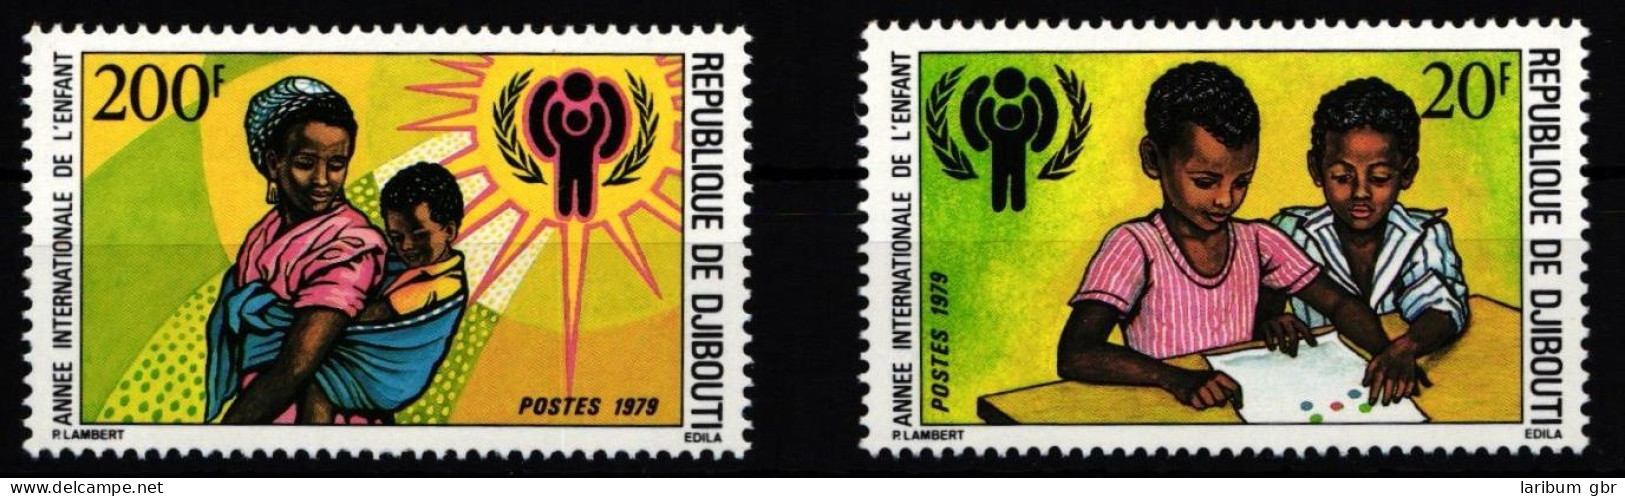 Dschibuti 241-242 Postfrisch Jahr Des KIndes #HD606 - Dschibuti (1977-...)